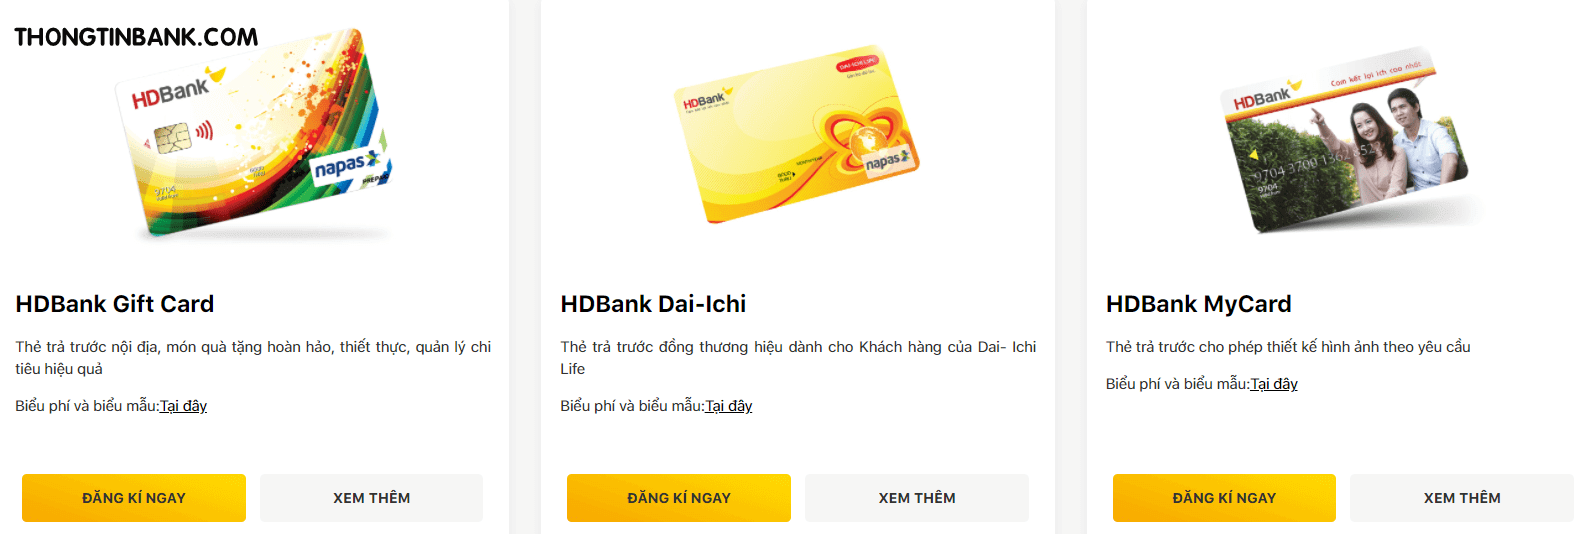 Lãi suất và phí dịch vụ của thẻ ghi nợ HDBank như thế nào?